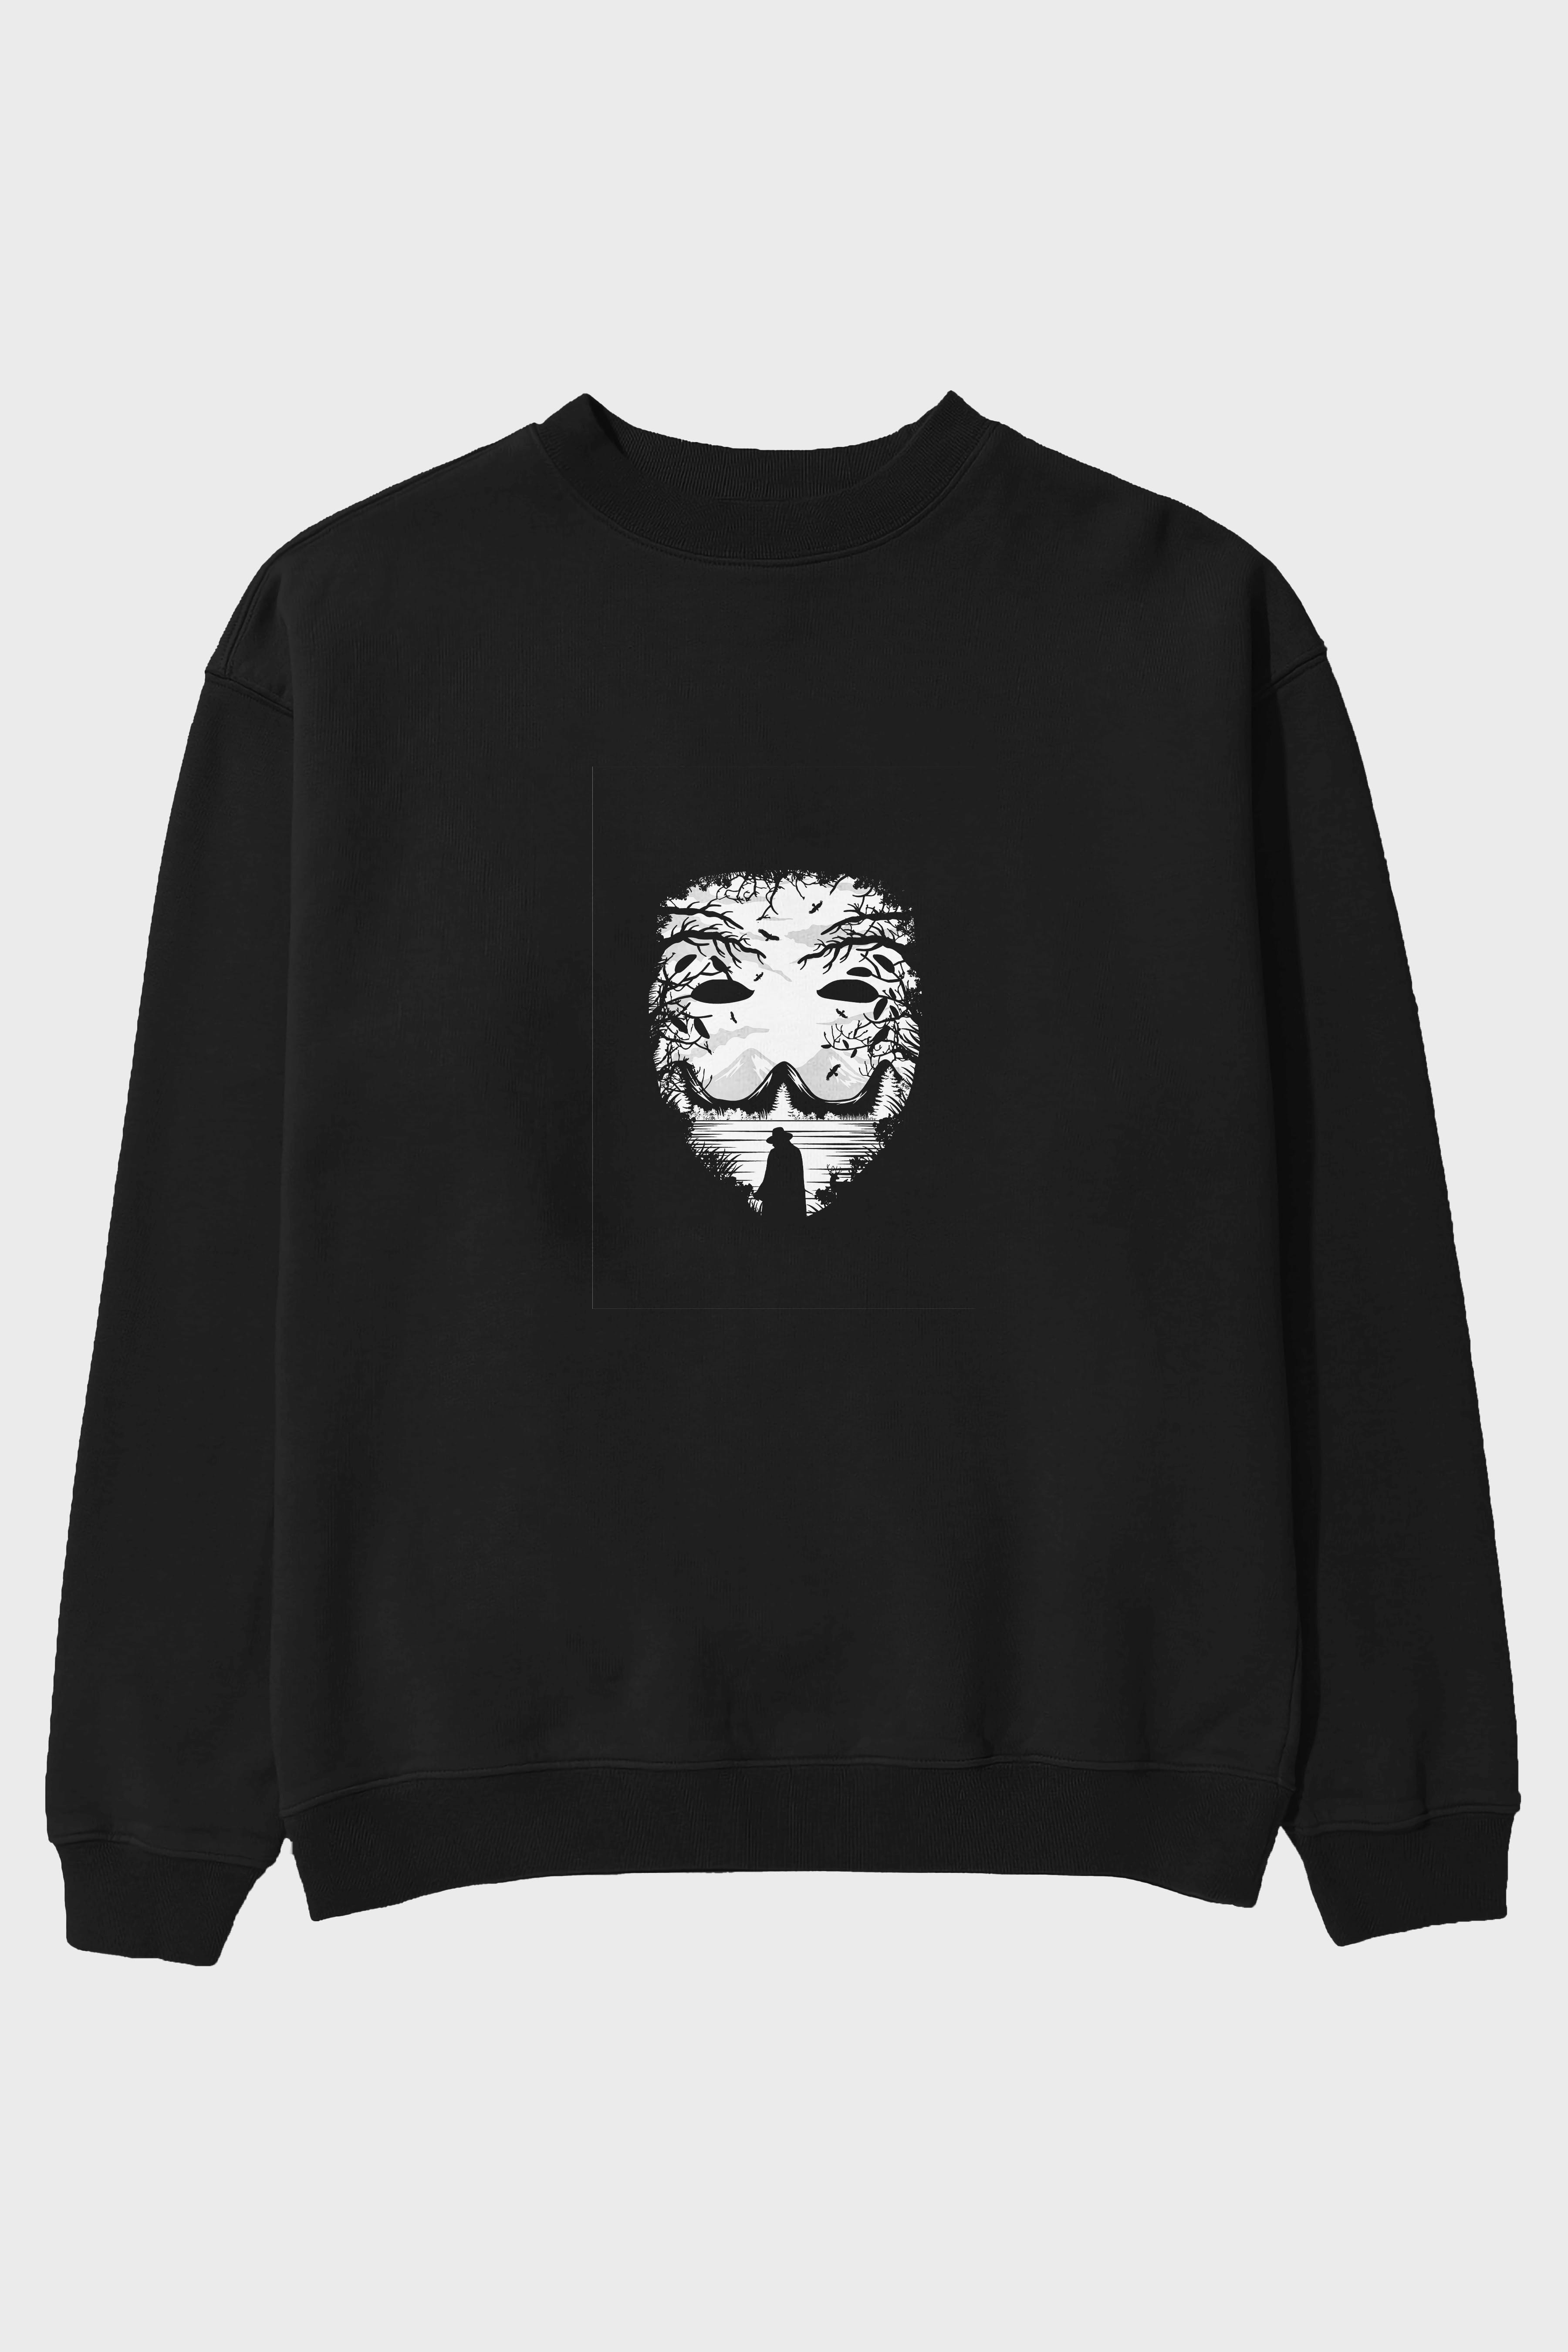 The Mask (2) Ön Baskılı Oversize Sweatshirt Erkek Kadın Unisex